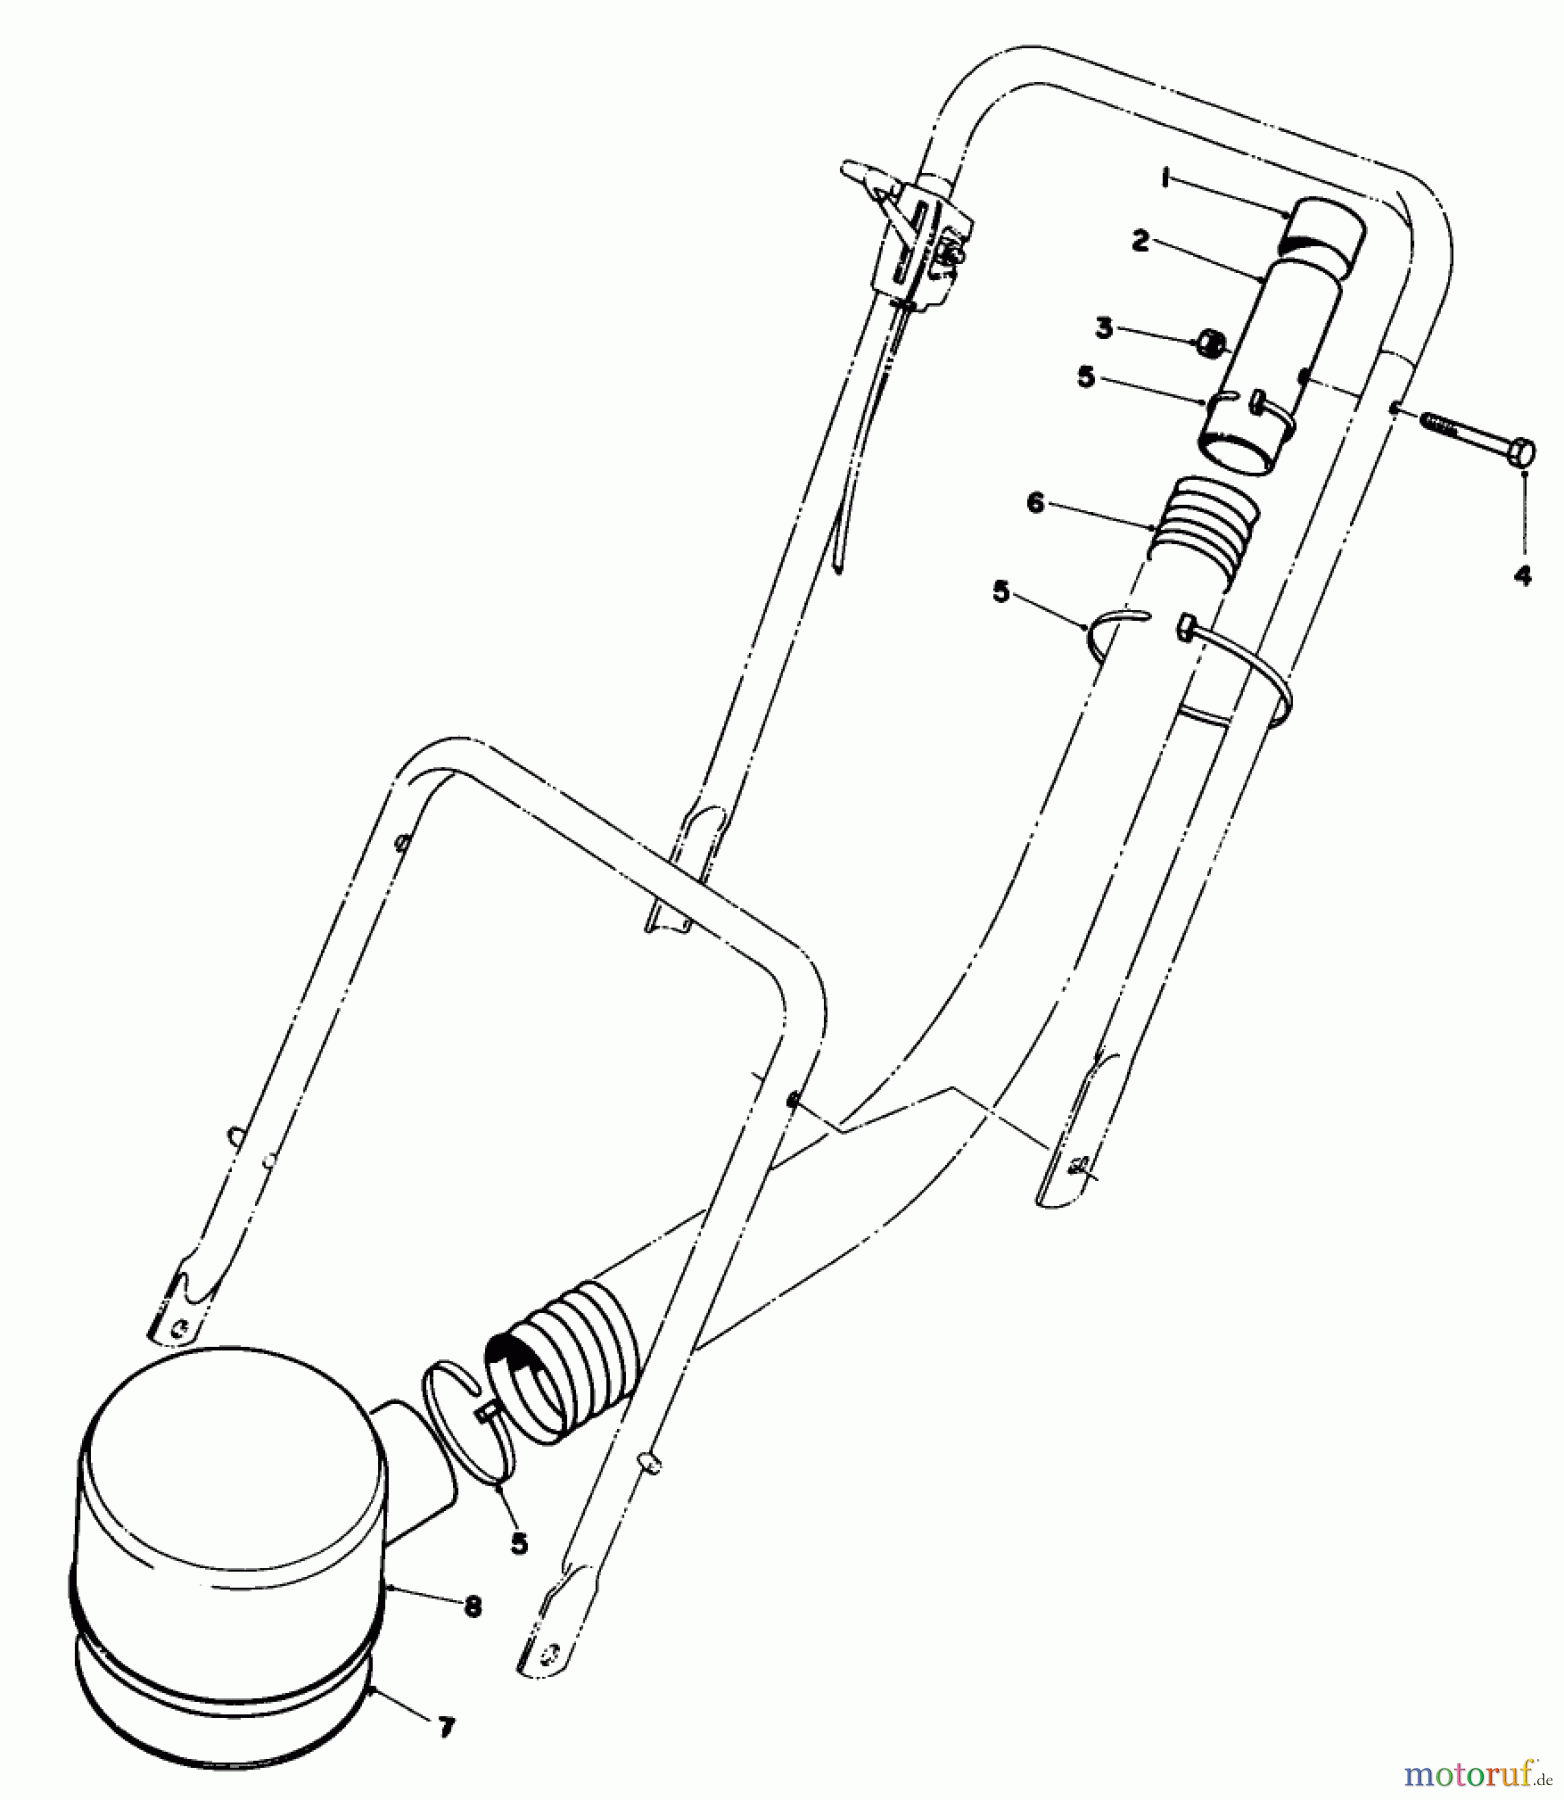  Toro Neu Mowers, Walk-Behind Seite 2 22005 - Toro Lawnmower, 1984 (4000001-4999999) REMOTE AIR CLEANER KIT NO. 43-6940 (OPTIONAL)